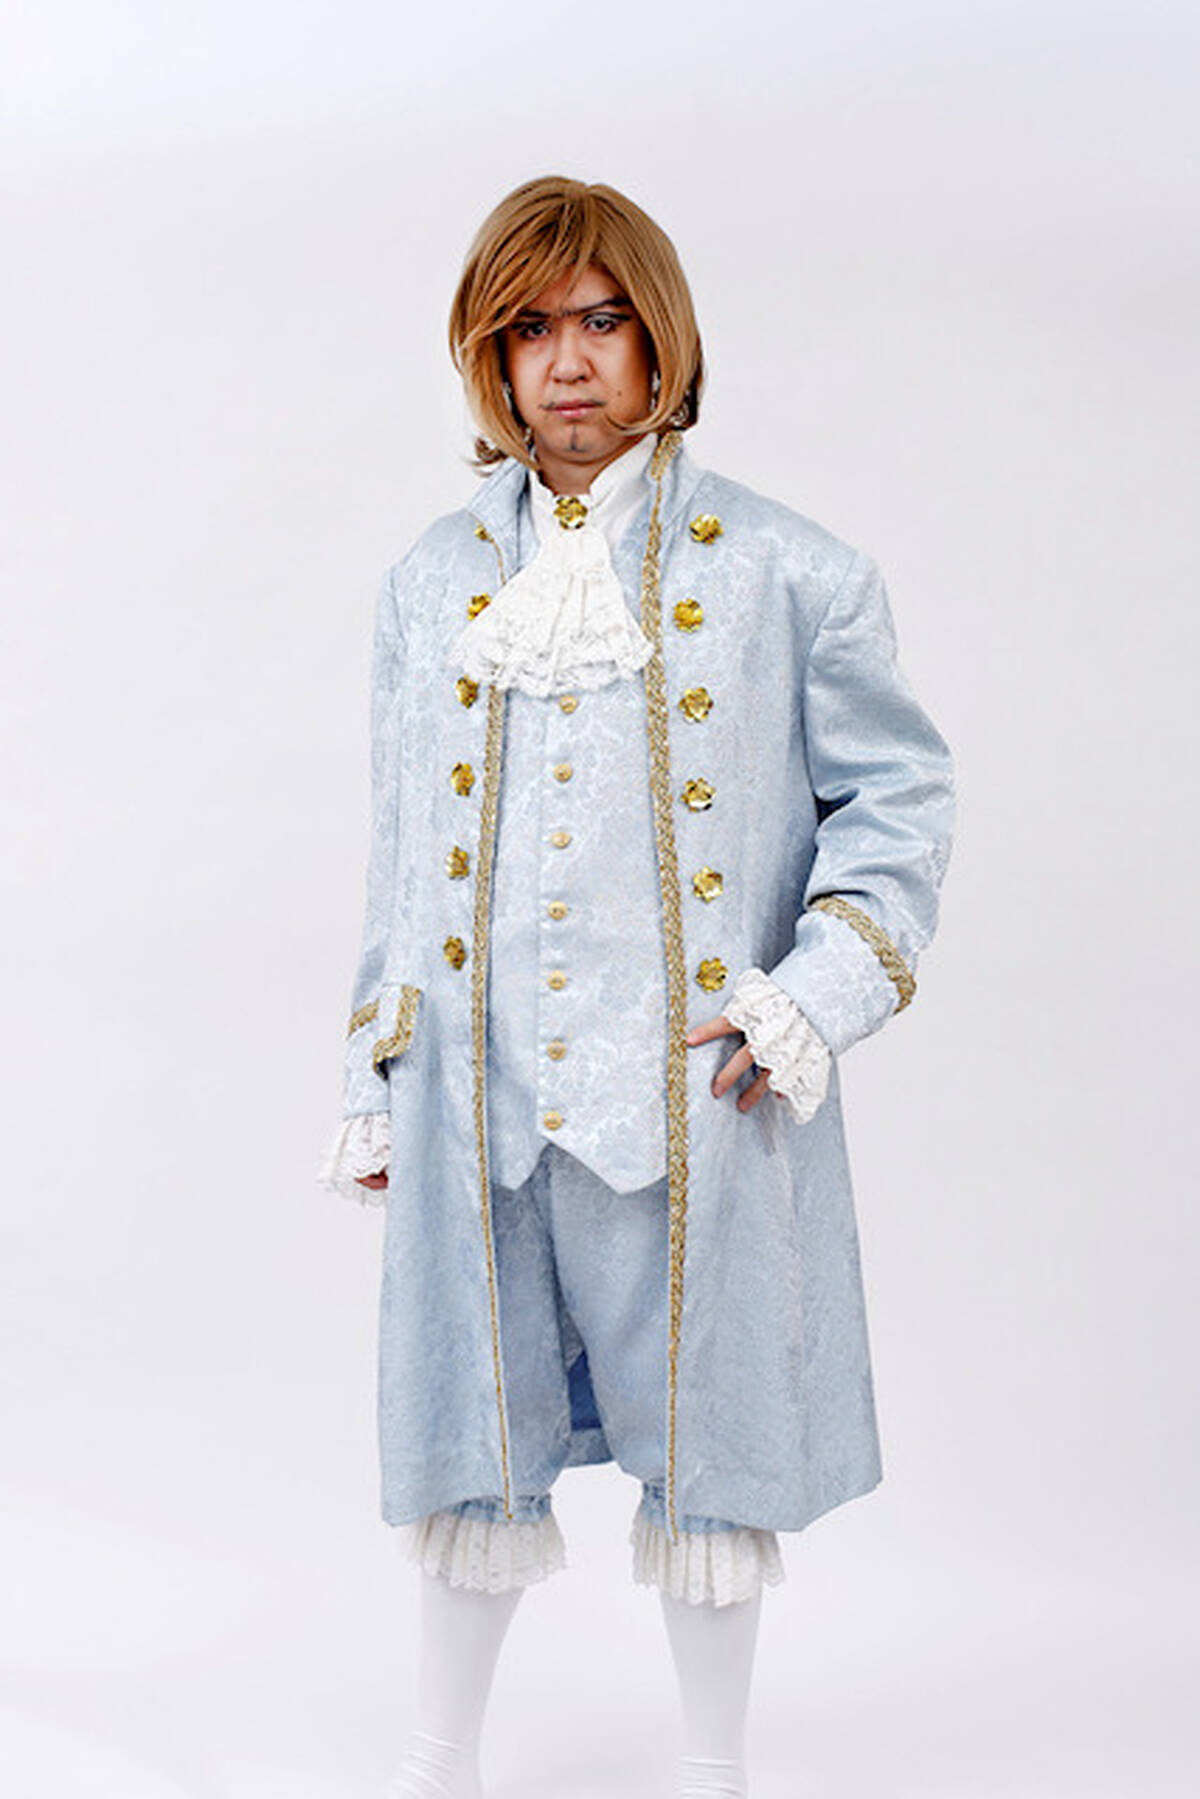 パロディ版 ベルサイユのばら 杉田智和が貴族 フェルゼン役で出演 貴族コスプレも披露 アキバ総研